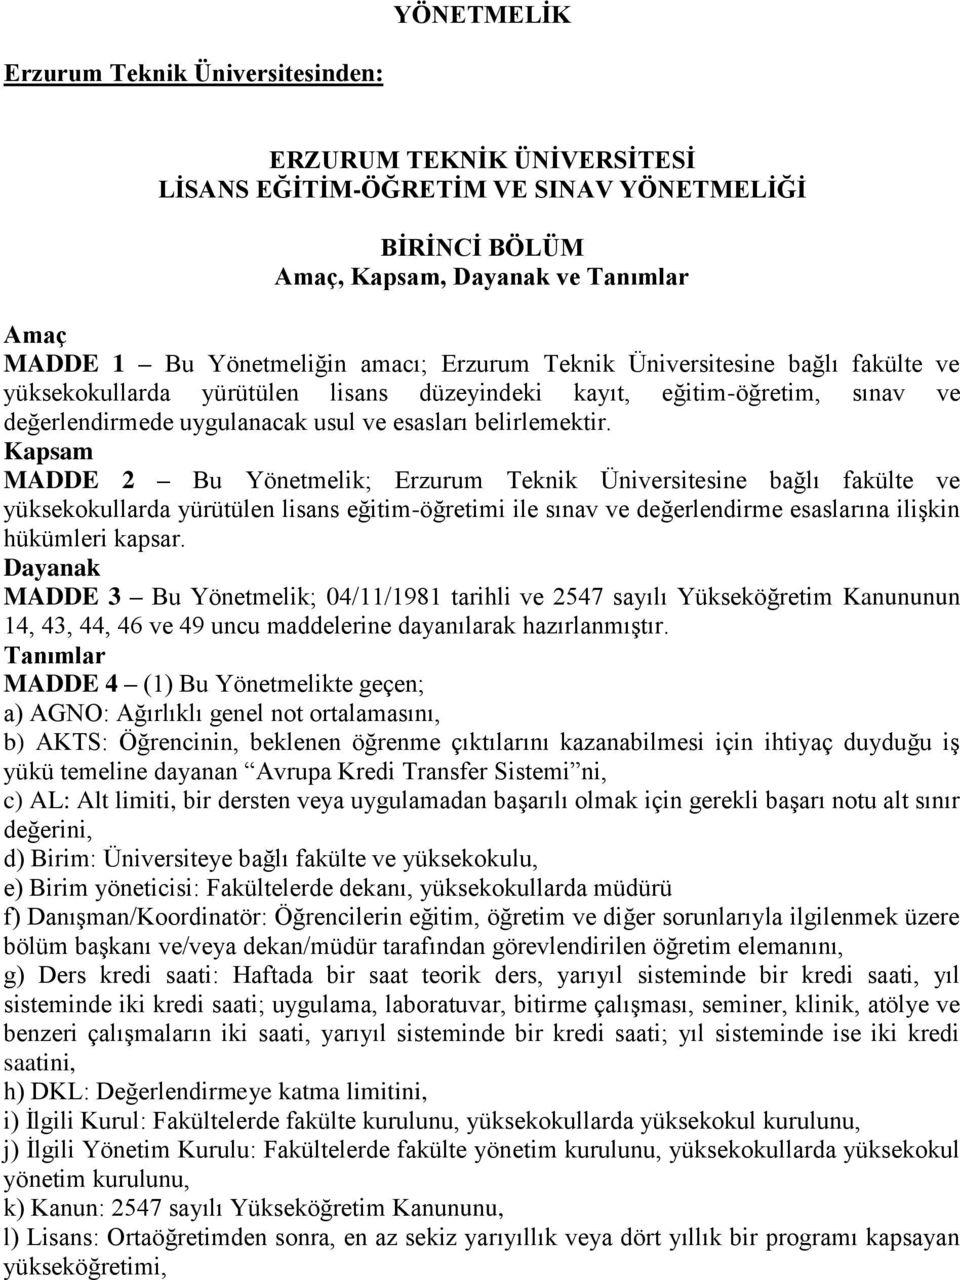 Kapsam MADDE 2 Bu Yönetmelik; Erzurum Teknik Üniversitesine bağlı fakülte ve yüksekokullarda yürütülen lisans eğitim-öğretimi ile sınav ve değerlendirme esaslarına ilişkin hükümleri kapsar.